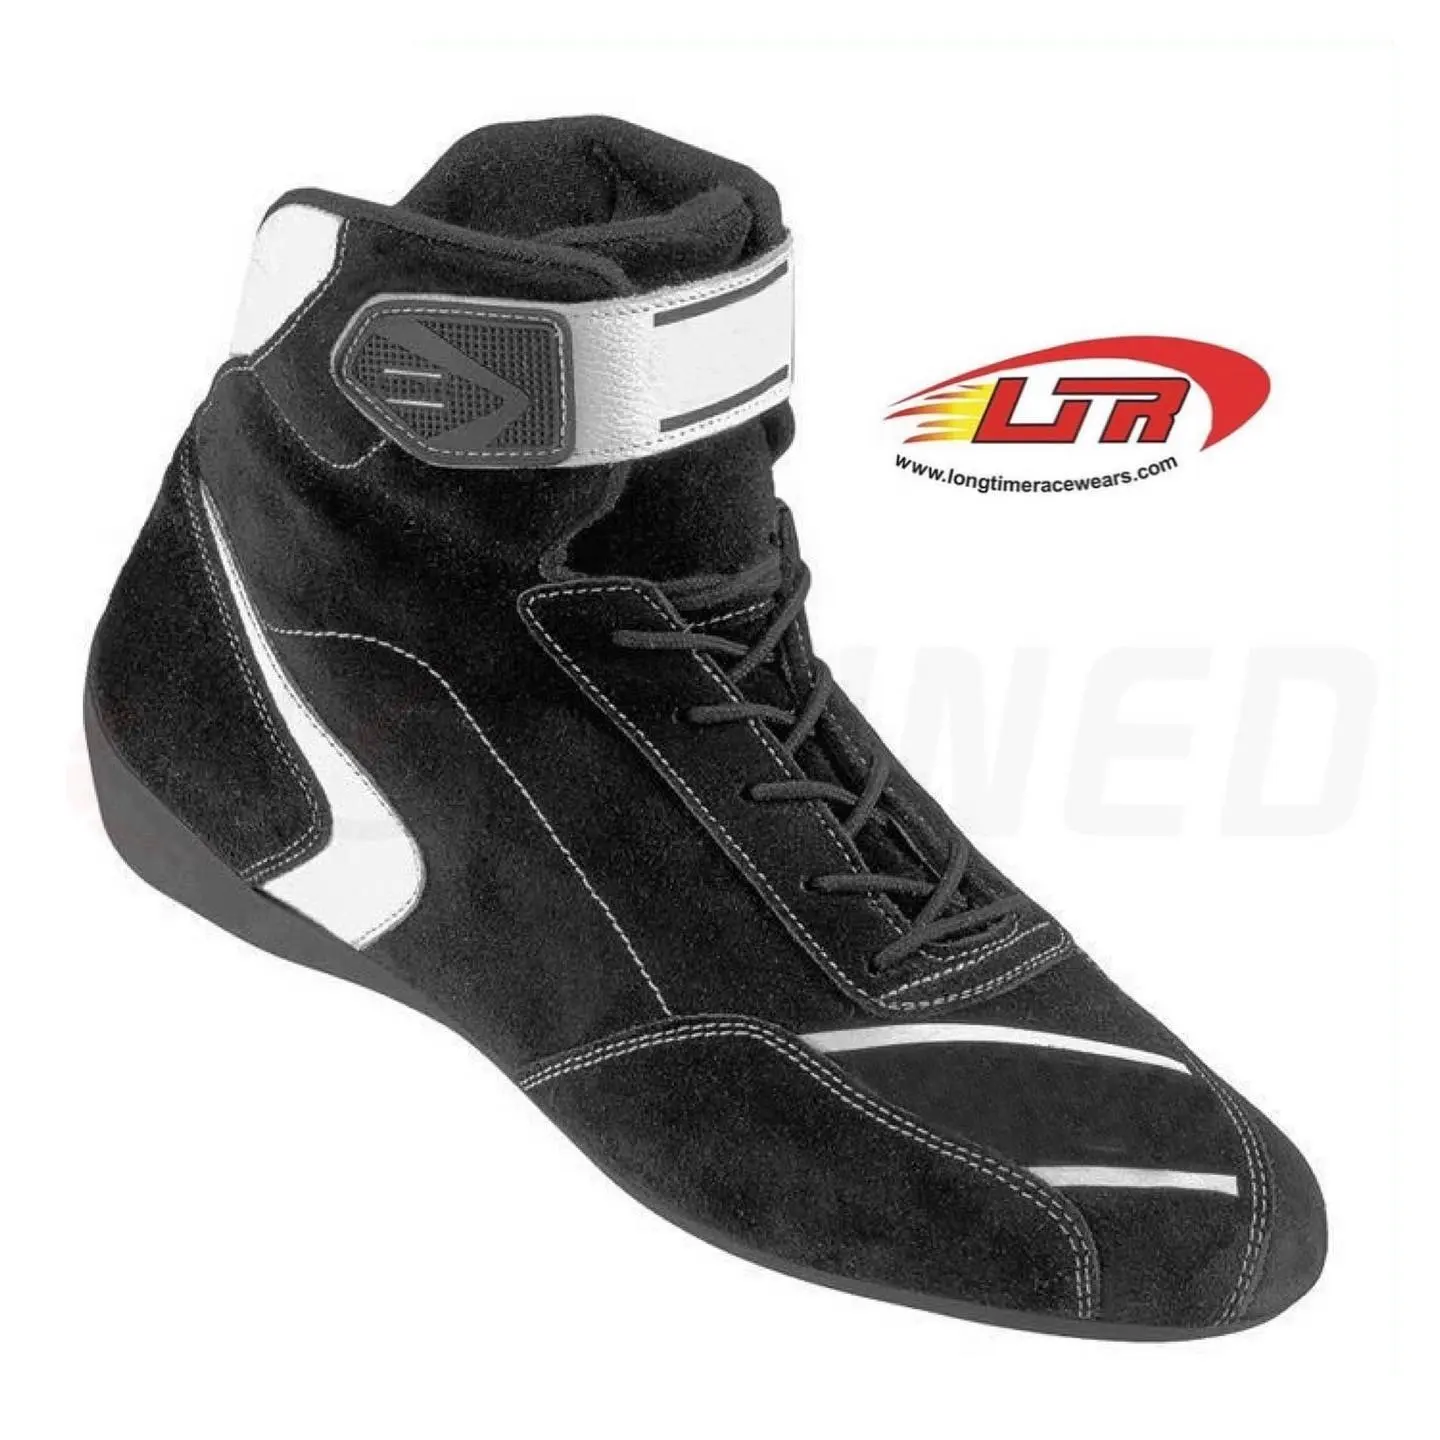 أحذية رياضية للسباقات معتمدة من SFI/حذاء للسباقات الدولية مصمم خصوصًا حسب الطلب معتمد من SFI 3.3